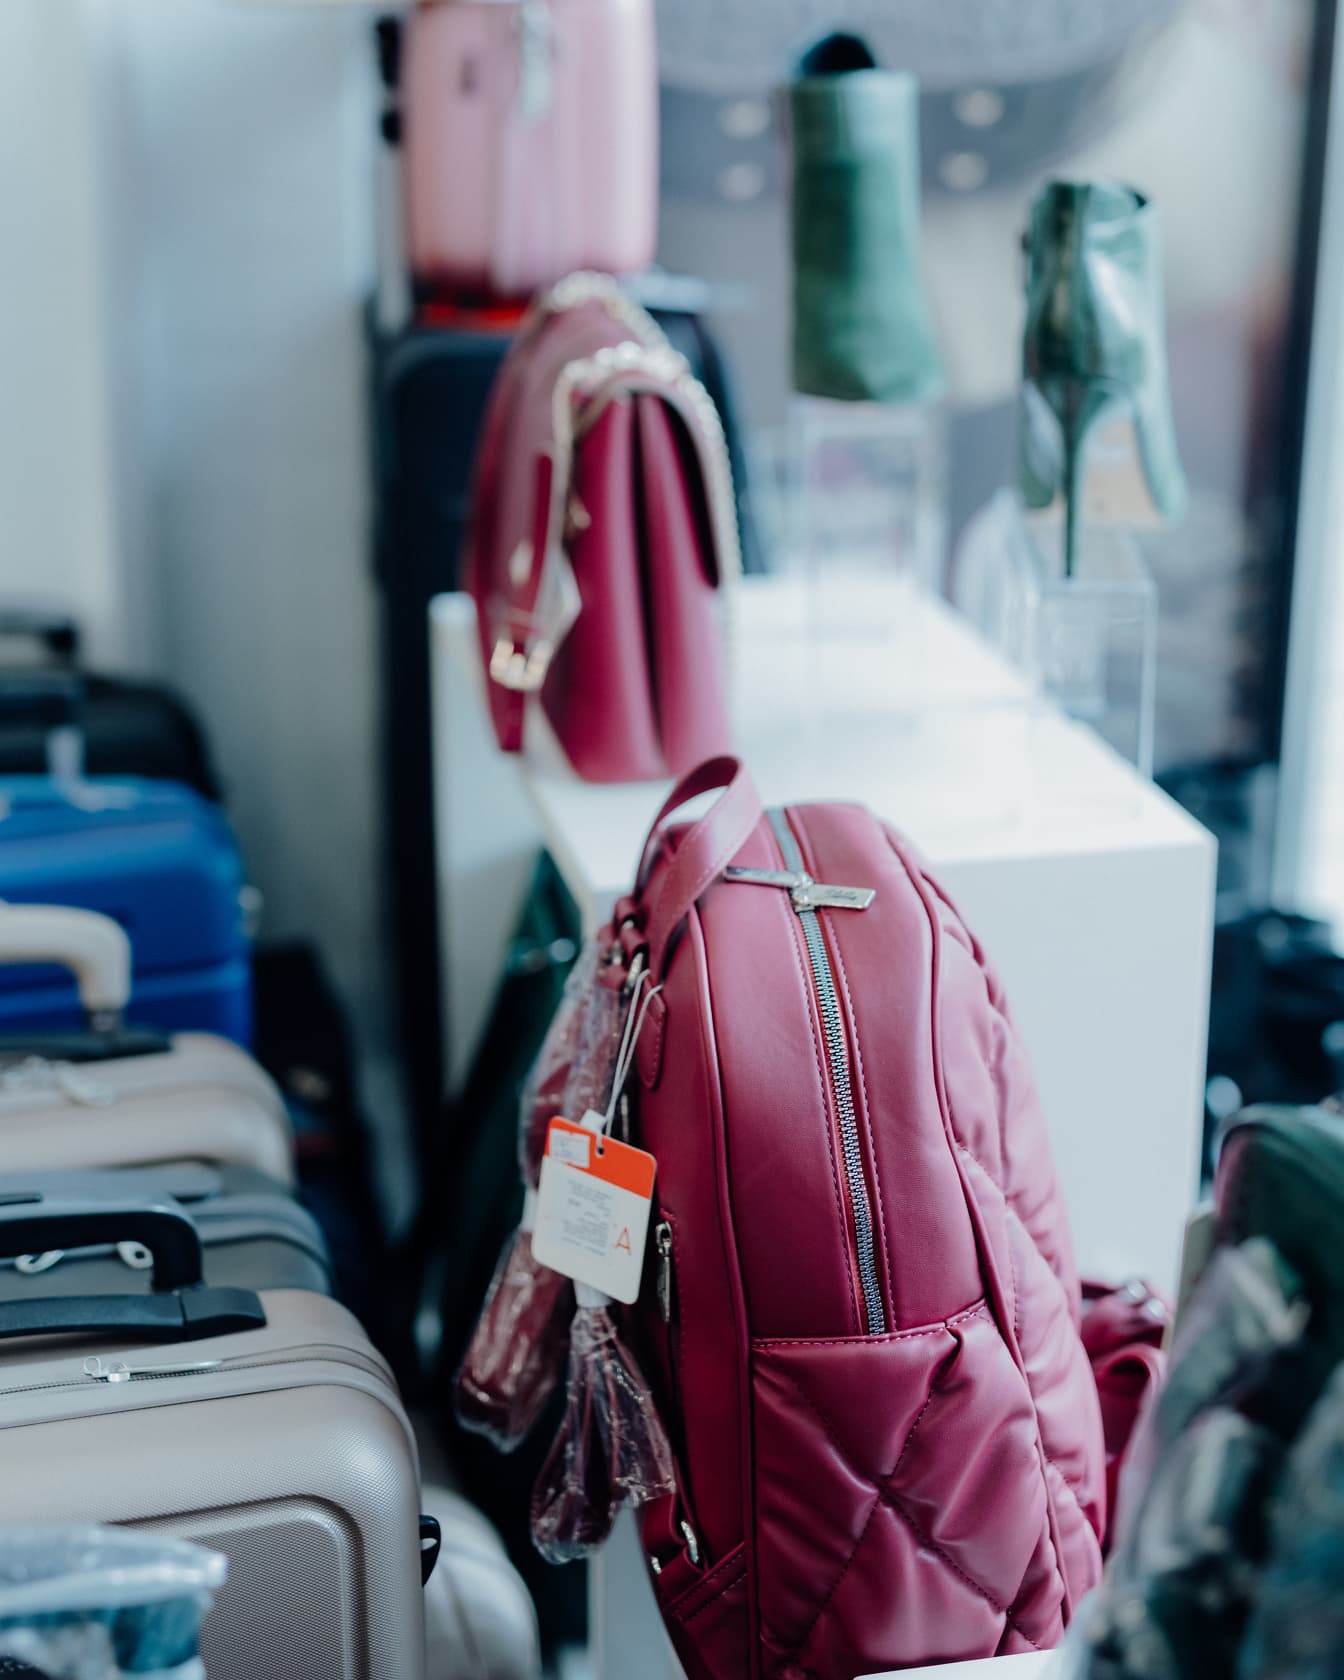 Ružičasti modni ruksak na polici u trgovini s drugim torbicama ponuđenim za prodaju